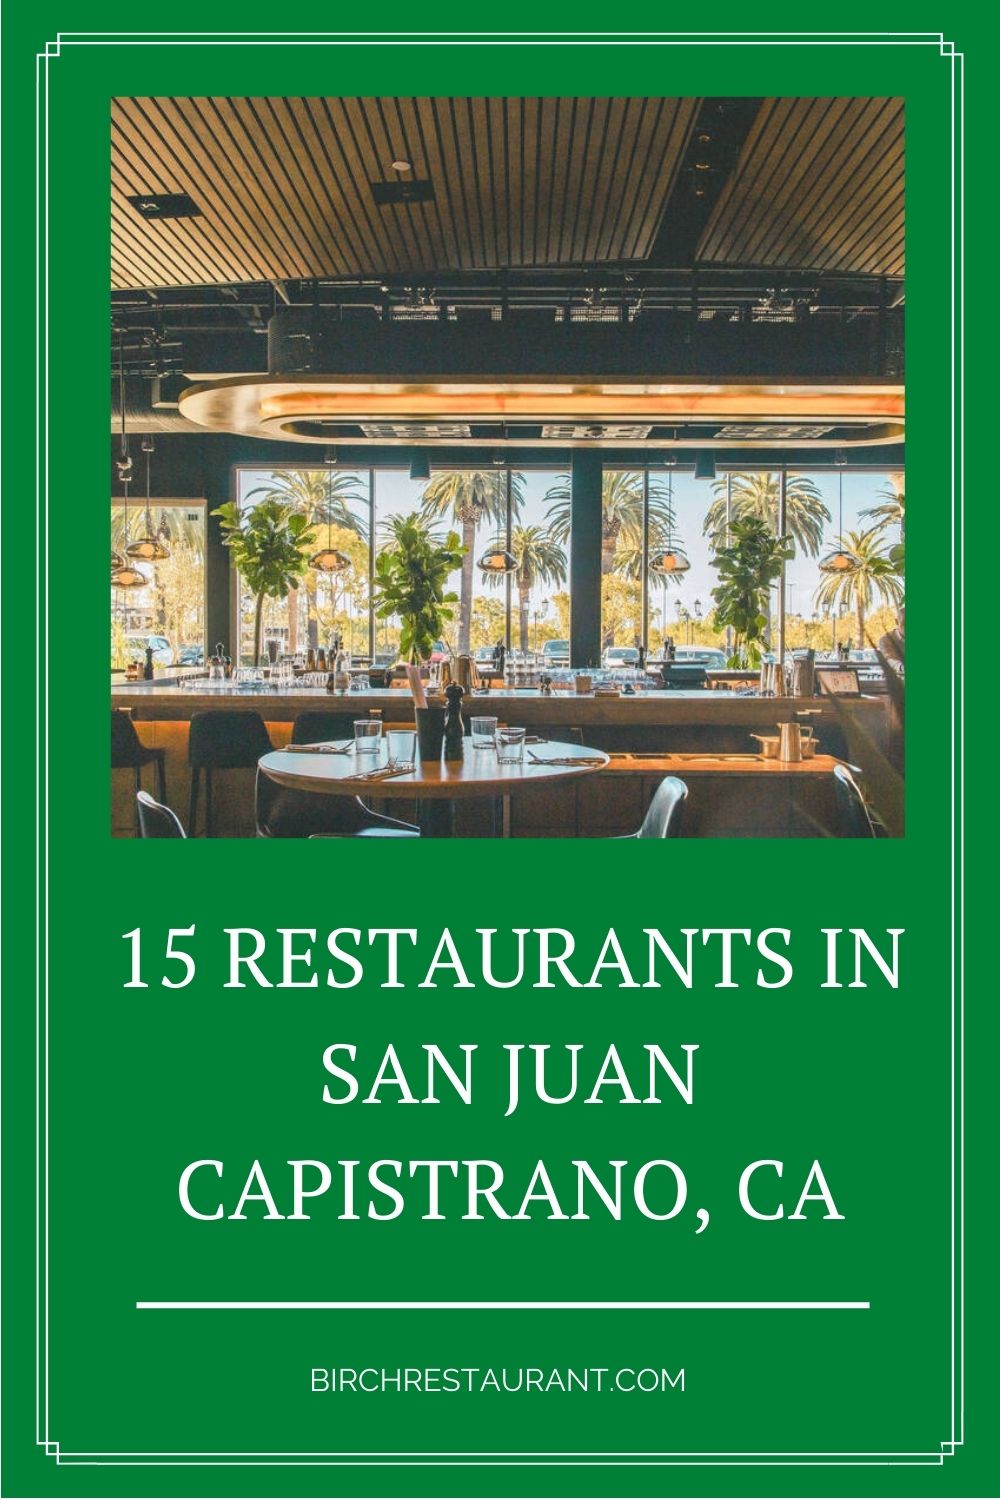 Best Restaurants in San Juan Capistrano